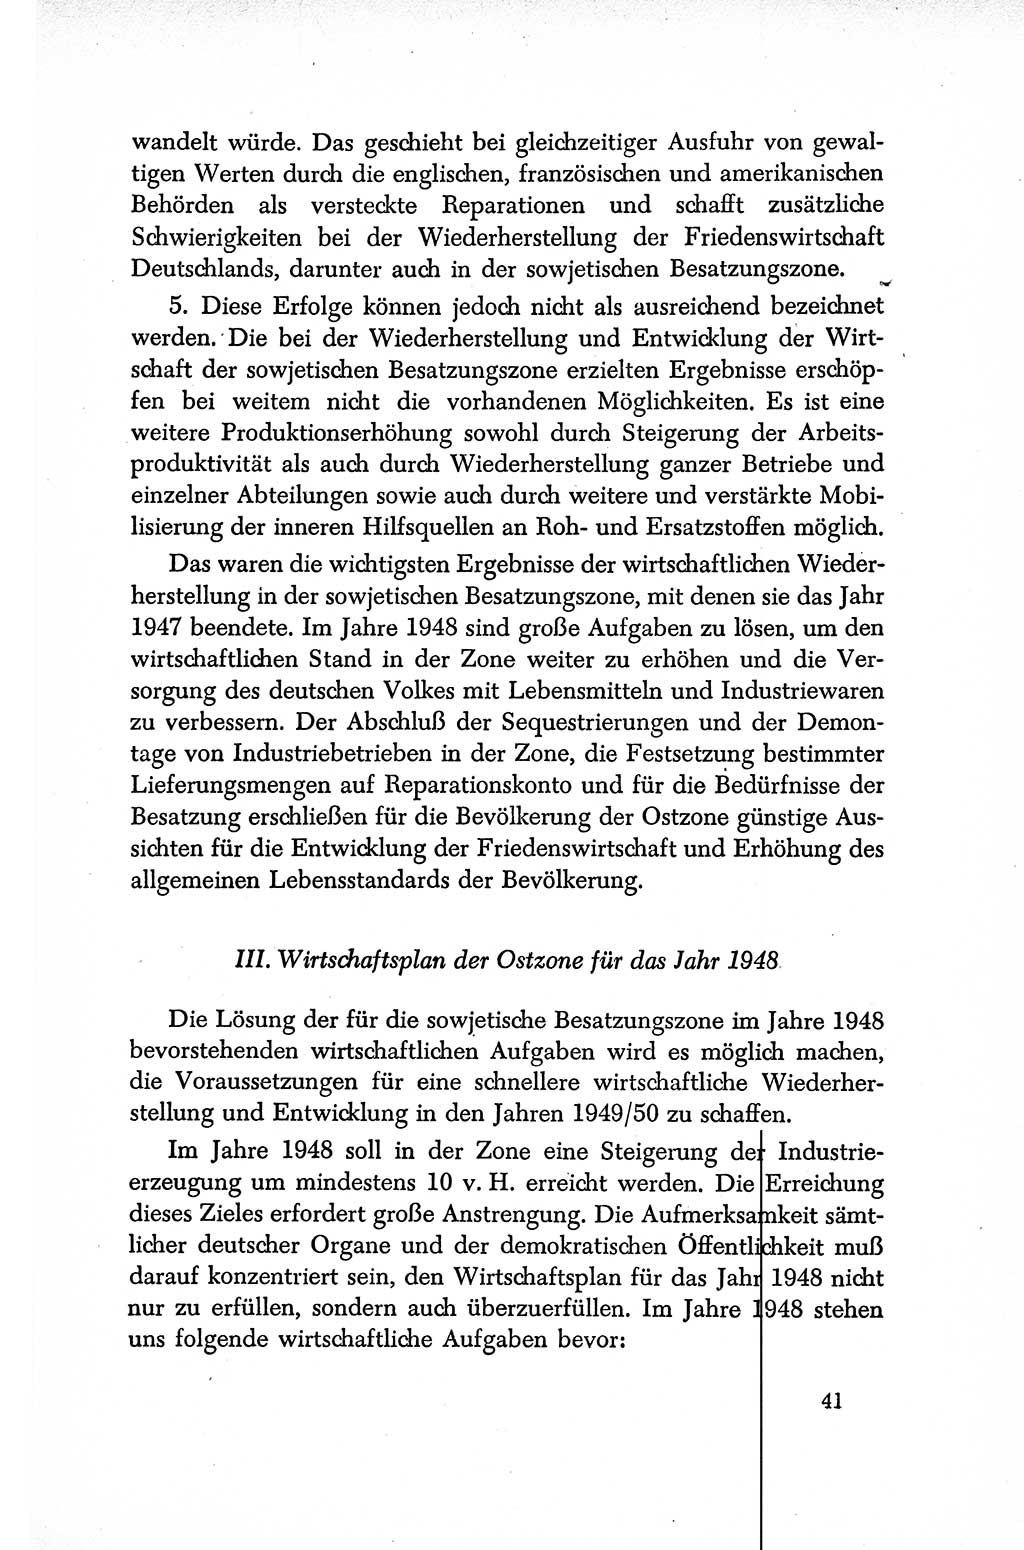 Dokumente der Sozialistischen Einheitspartei Deutschlands (SED) [Sowjetische Besatzungszone (SBZ) Deutschlands/Deutsche Demokratische Republik (DDR)] 1948-1950, Seite 41 (Dok. SED SBZ Dtl. DDR 1948-1950, S. 41)